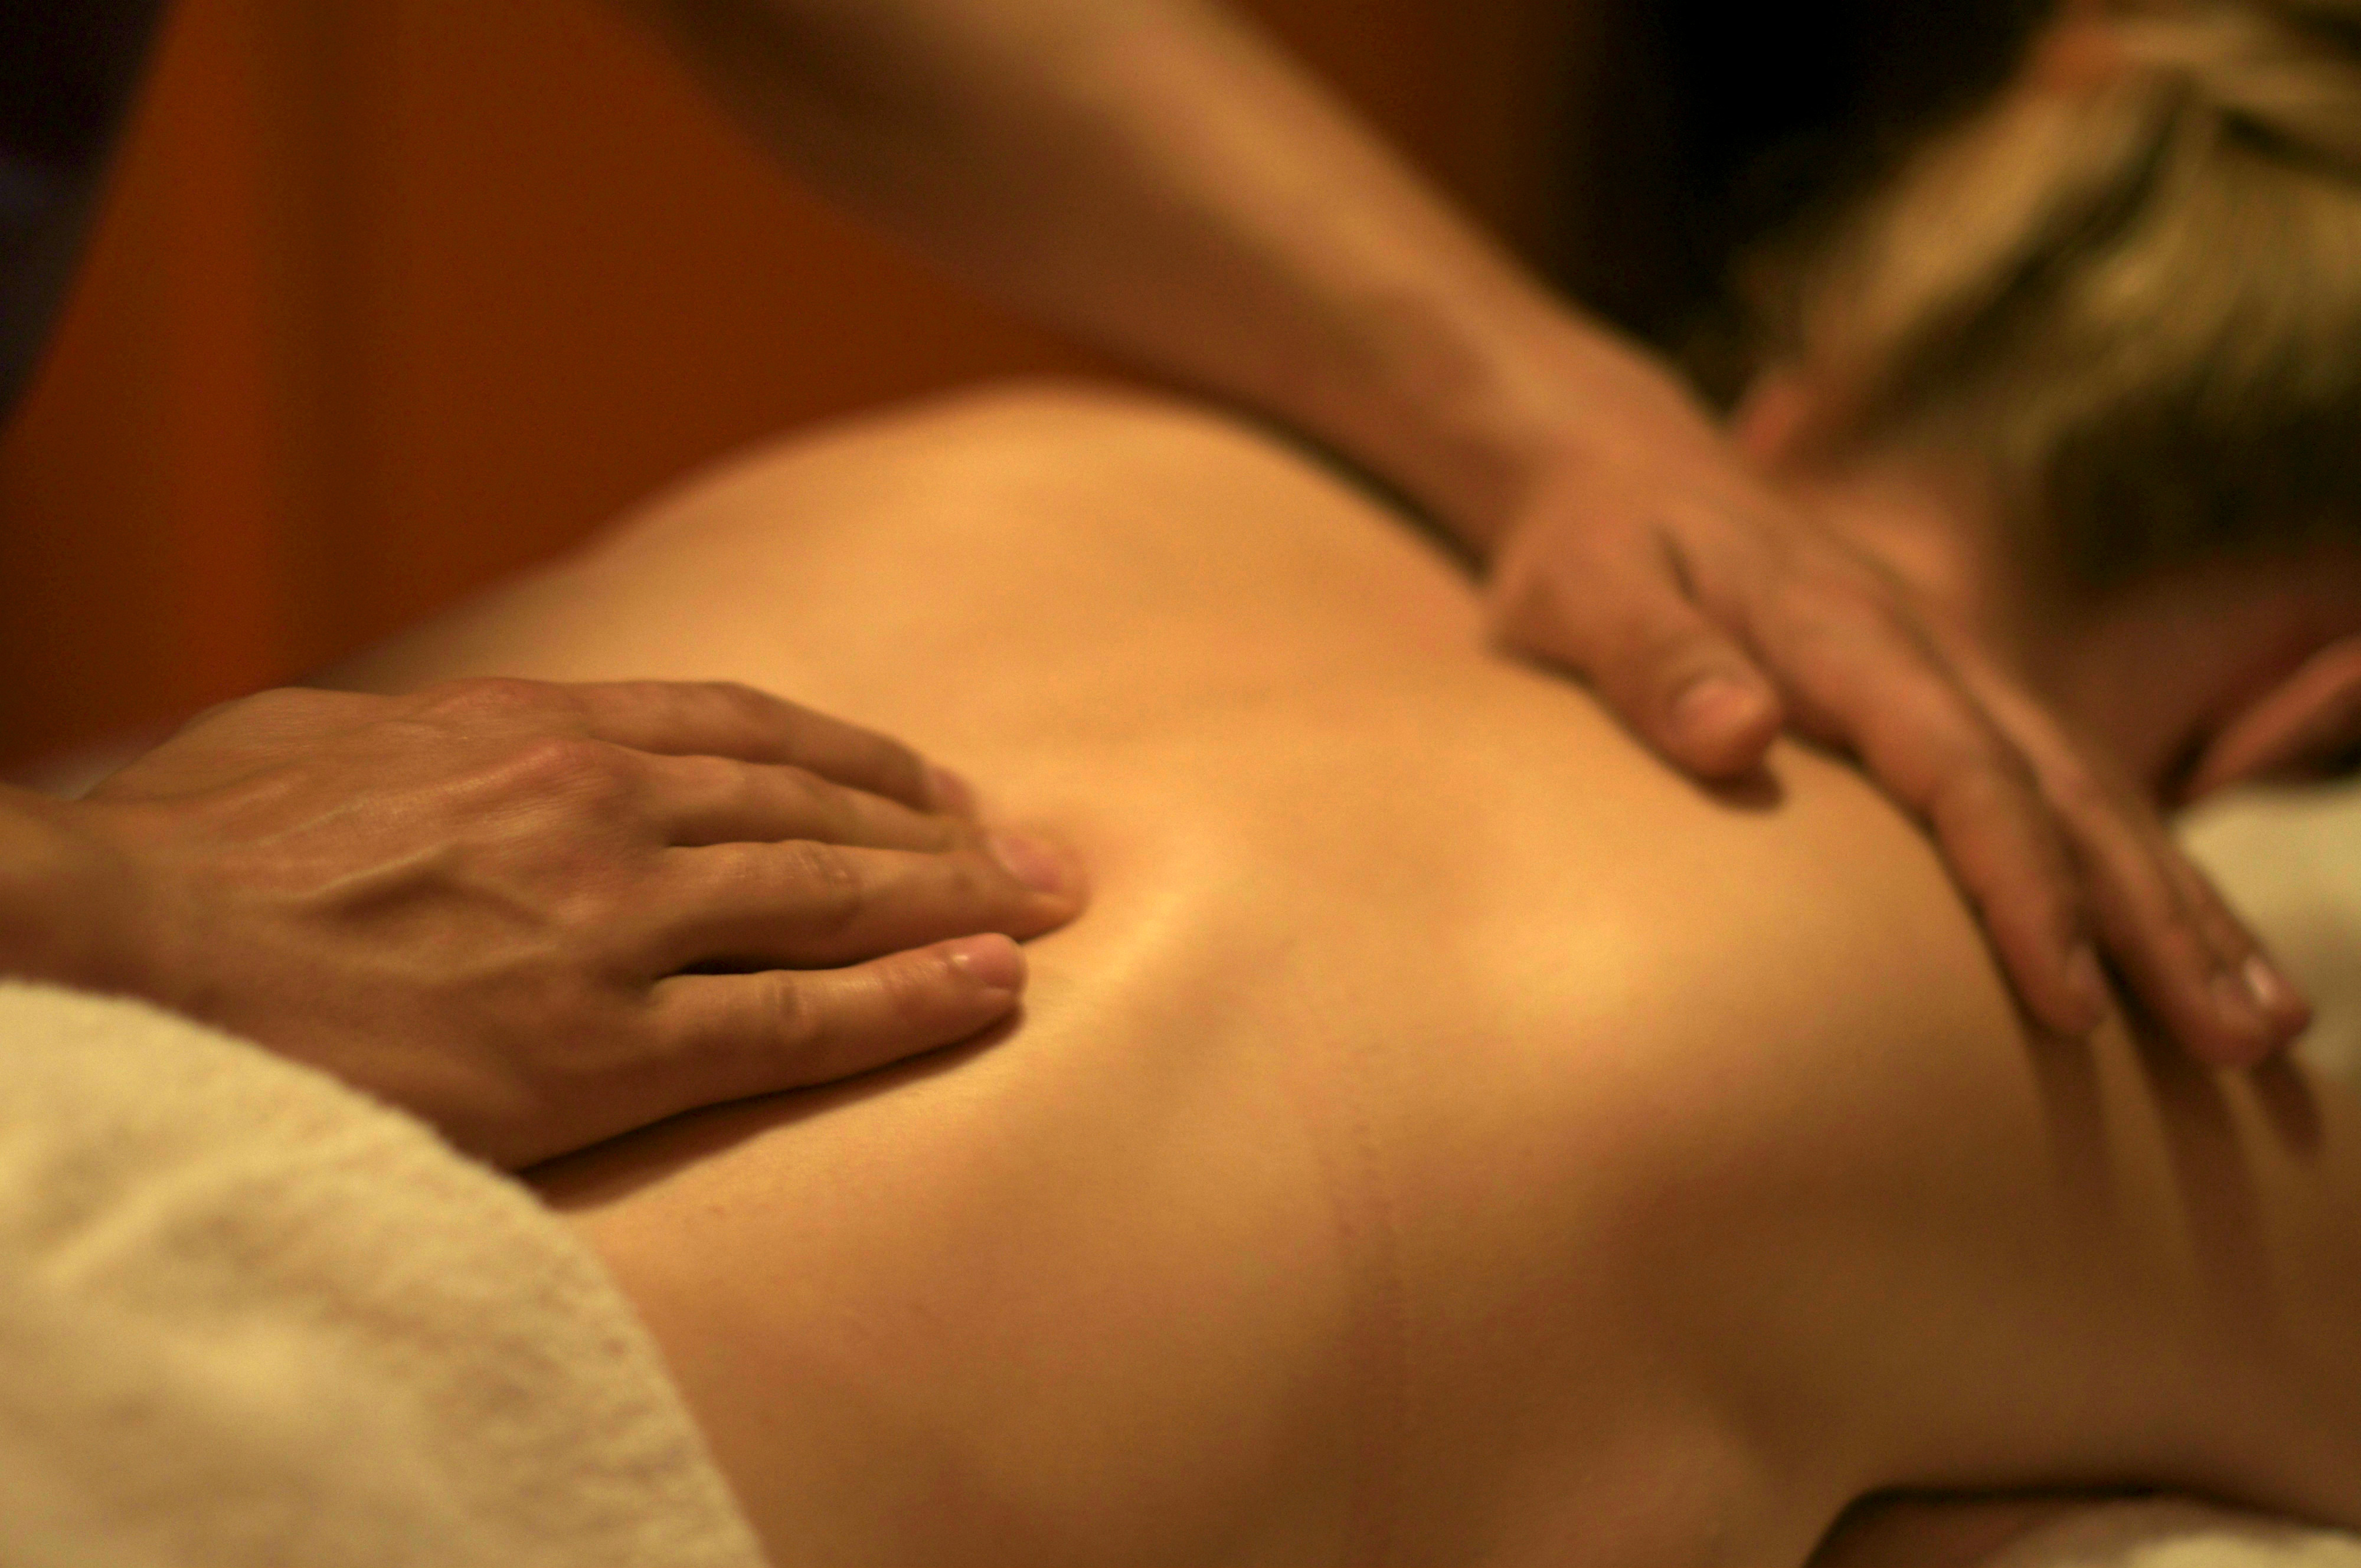 Erector spinae massage. 